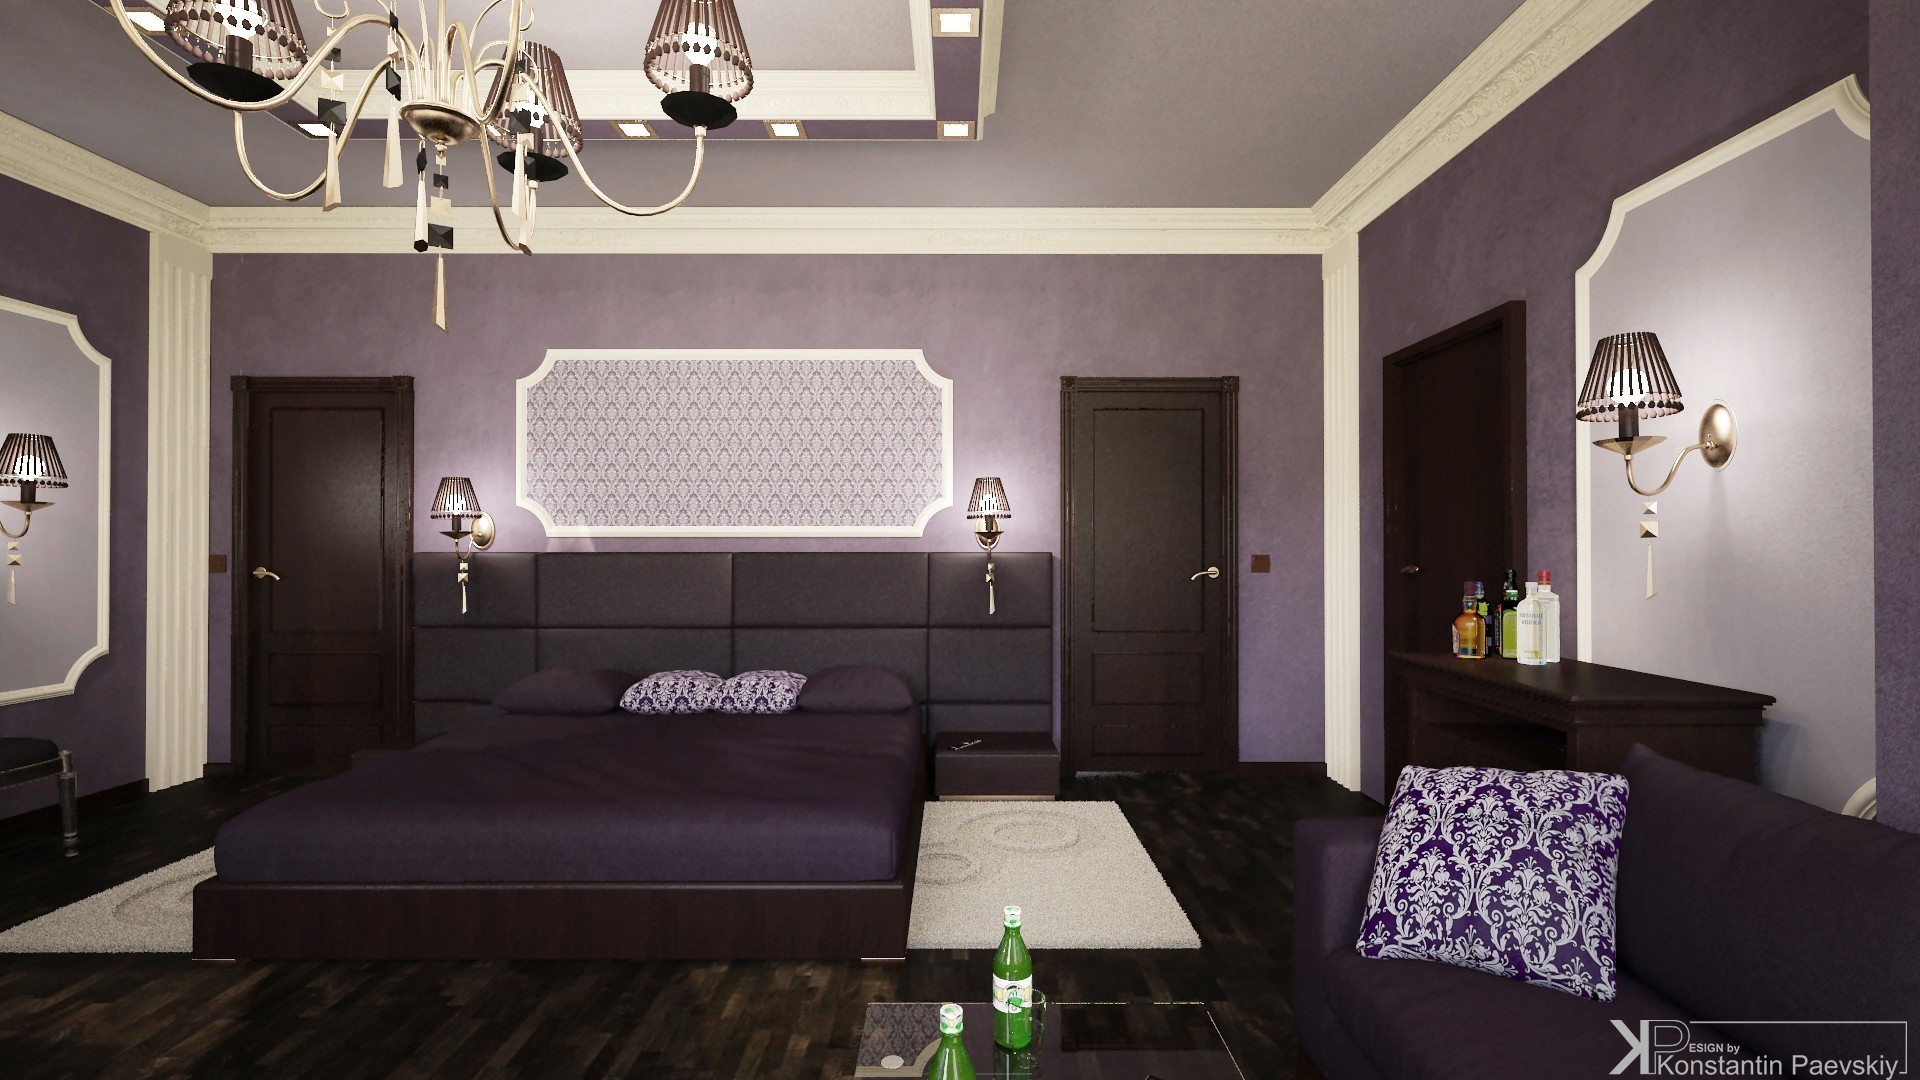 фиолетовая комната с коричневой мебелью